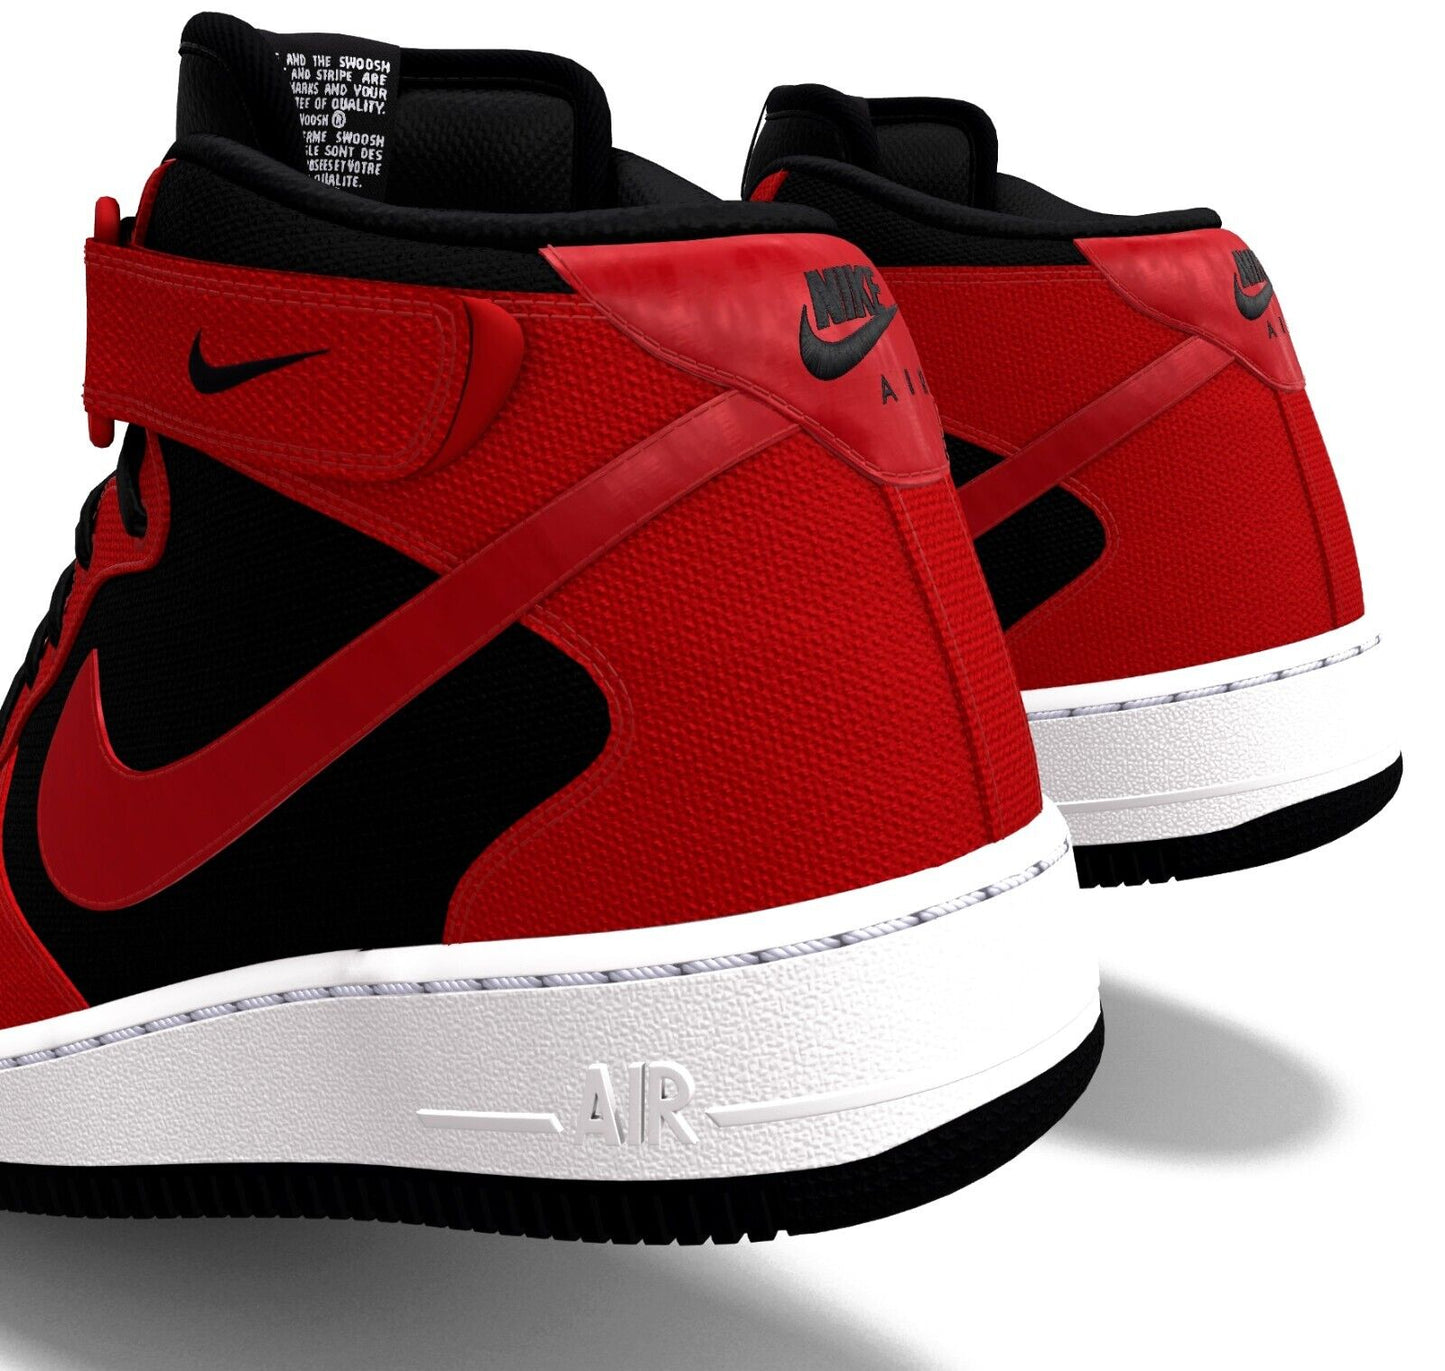 $215 NIB Mens NIKE Air Force 1 MID Black & Red Custom Canvas Basketball Shoes